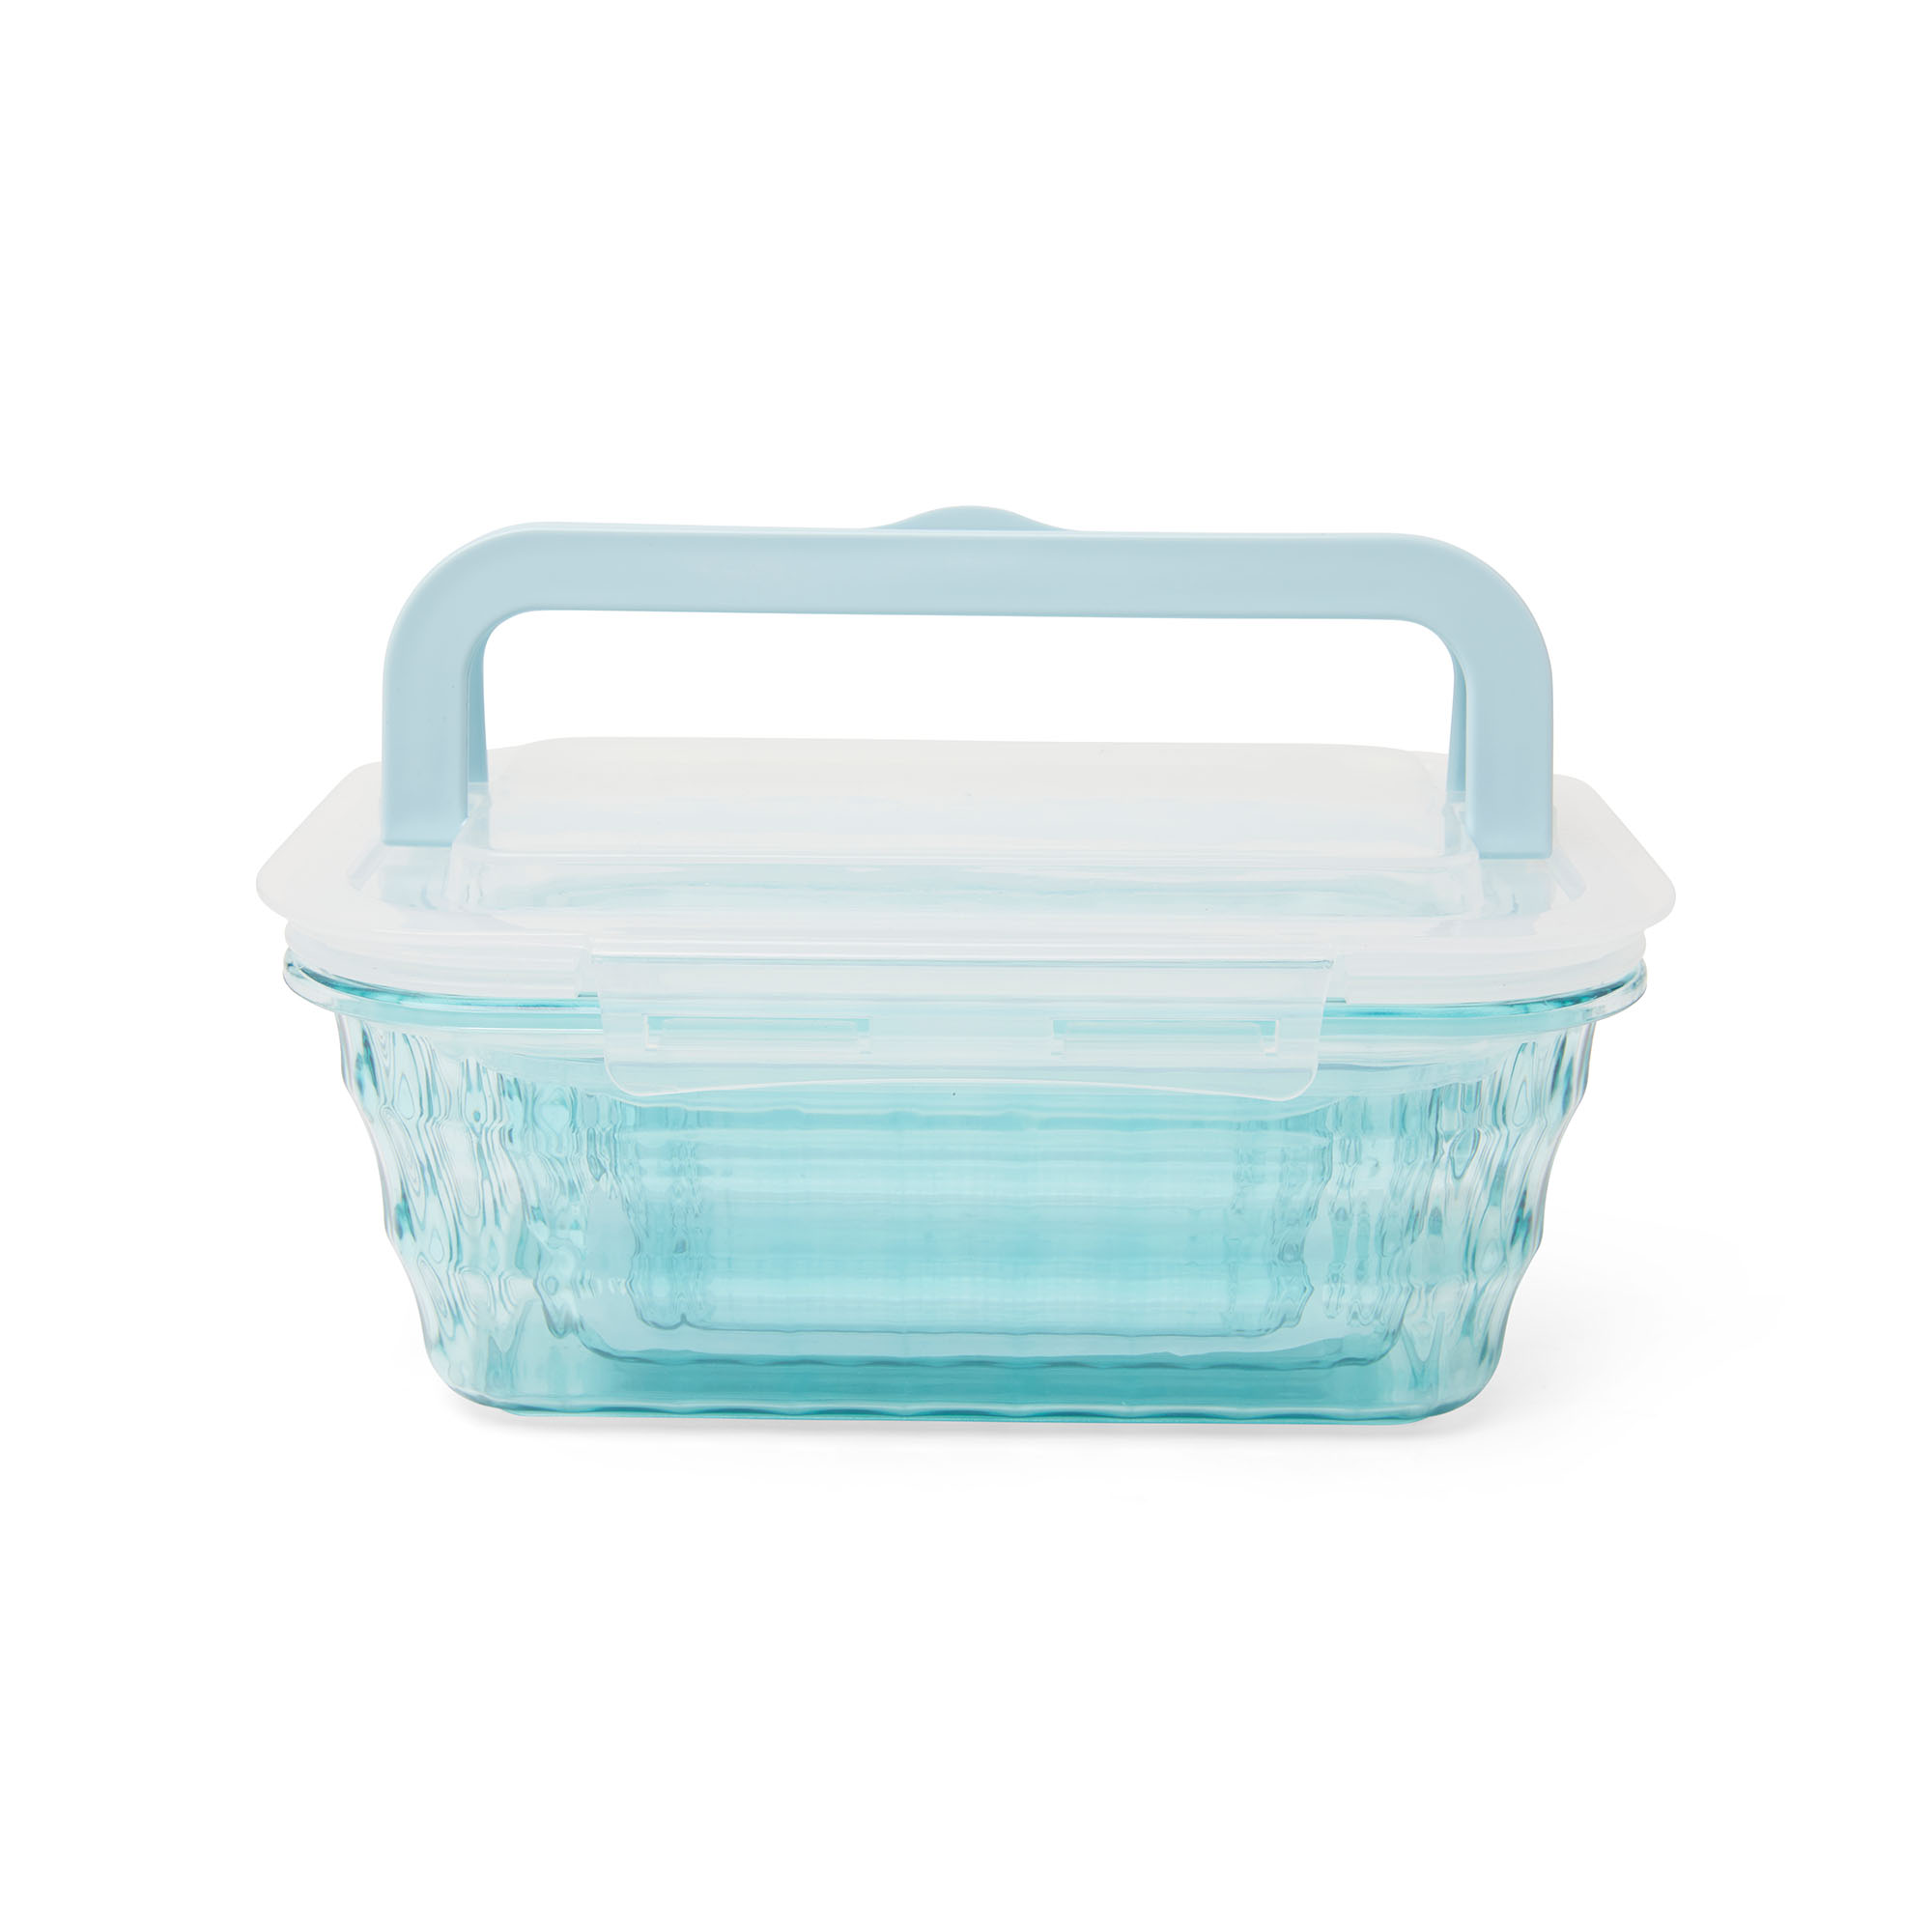 Porta pranzo lunch box in plastica - Set da 3 pz, , large